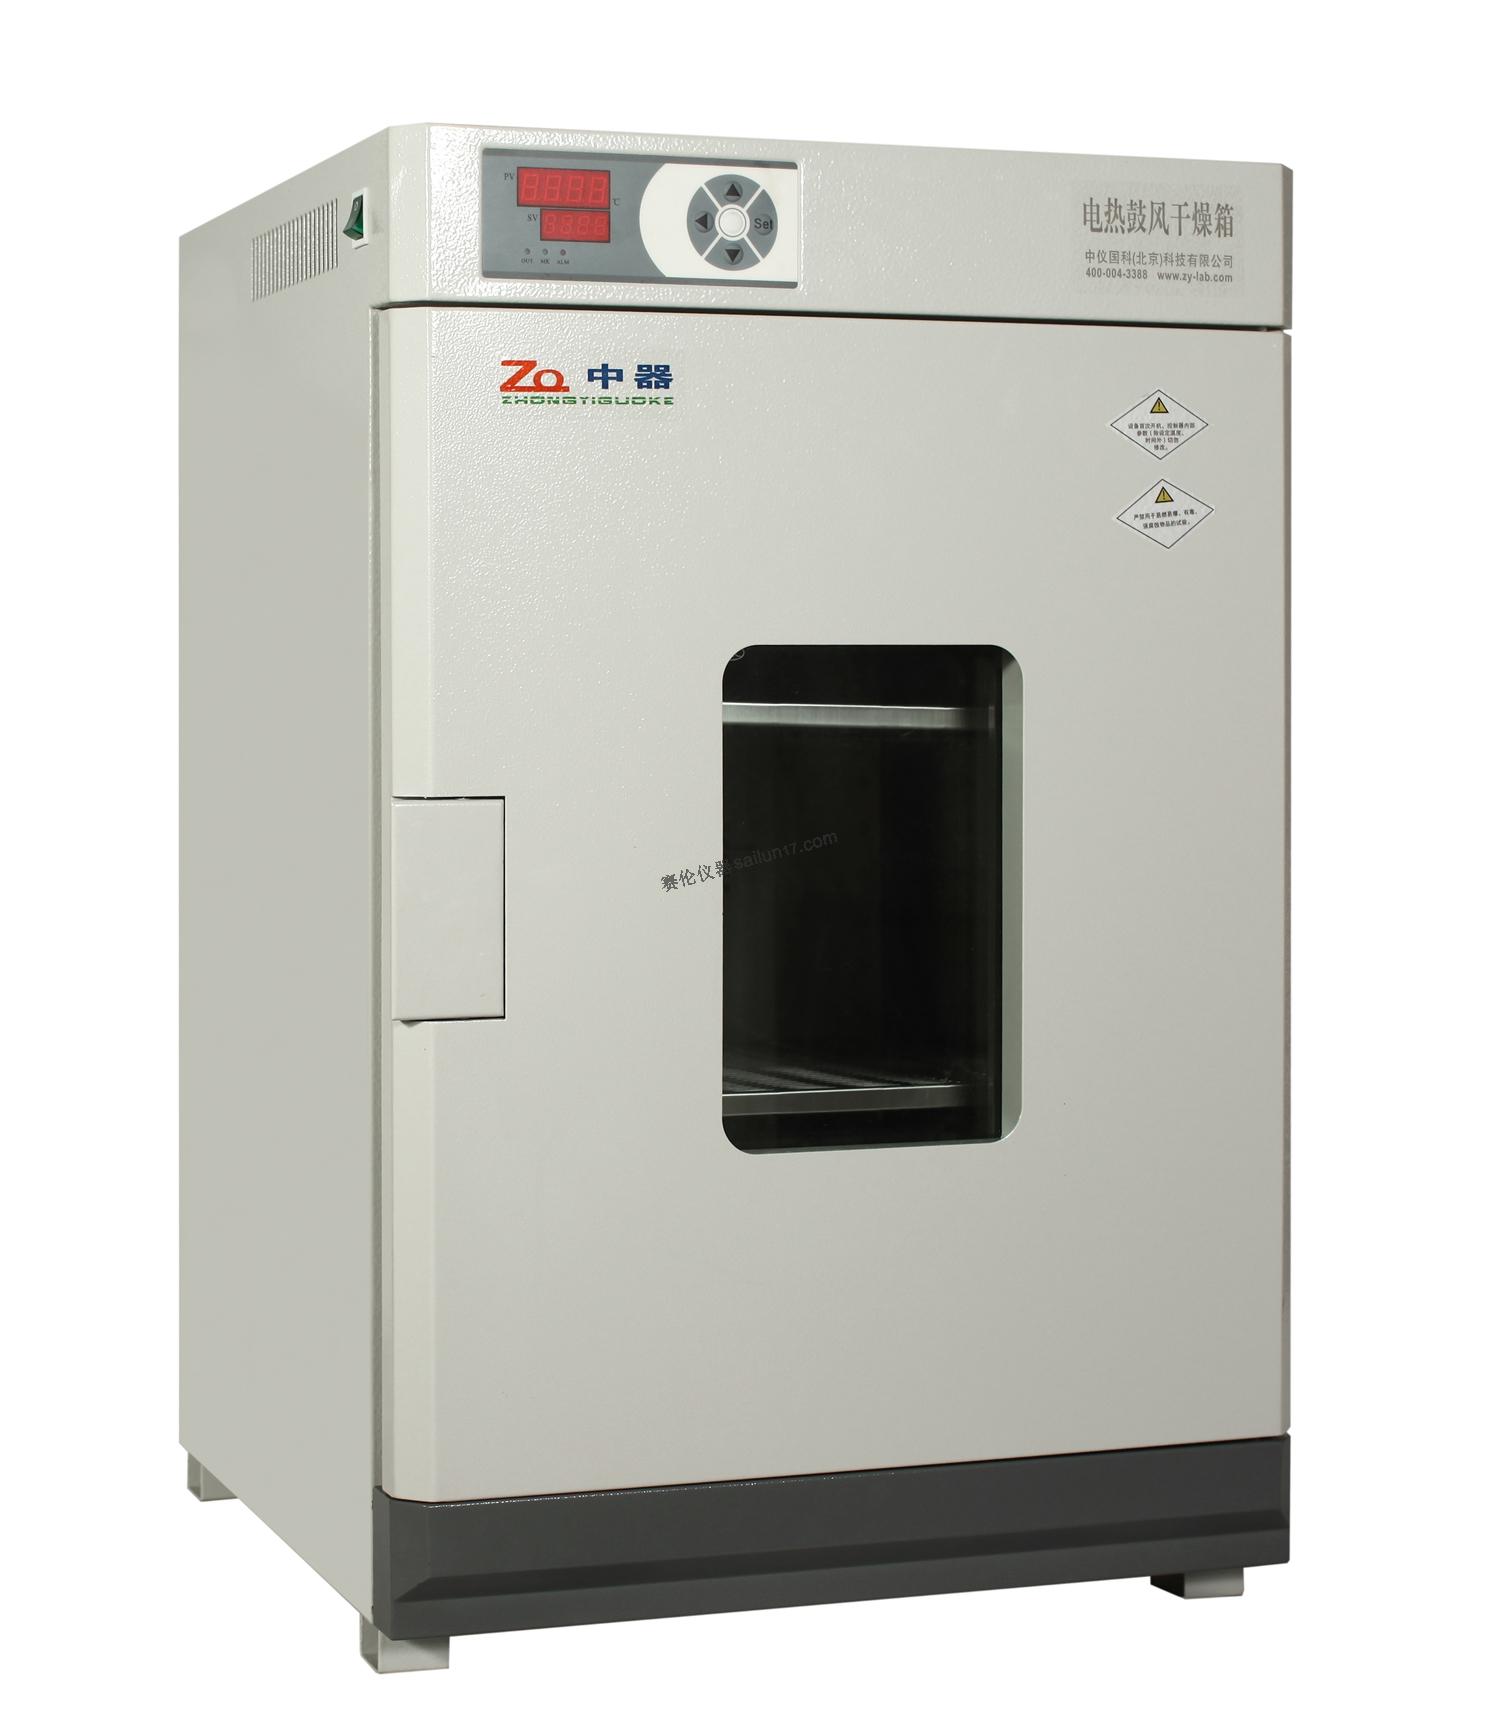 中器DHG-9140A电热鼓风干燥箱(250℃)